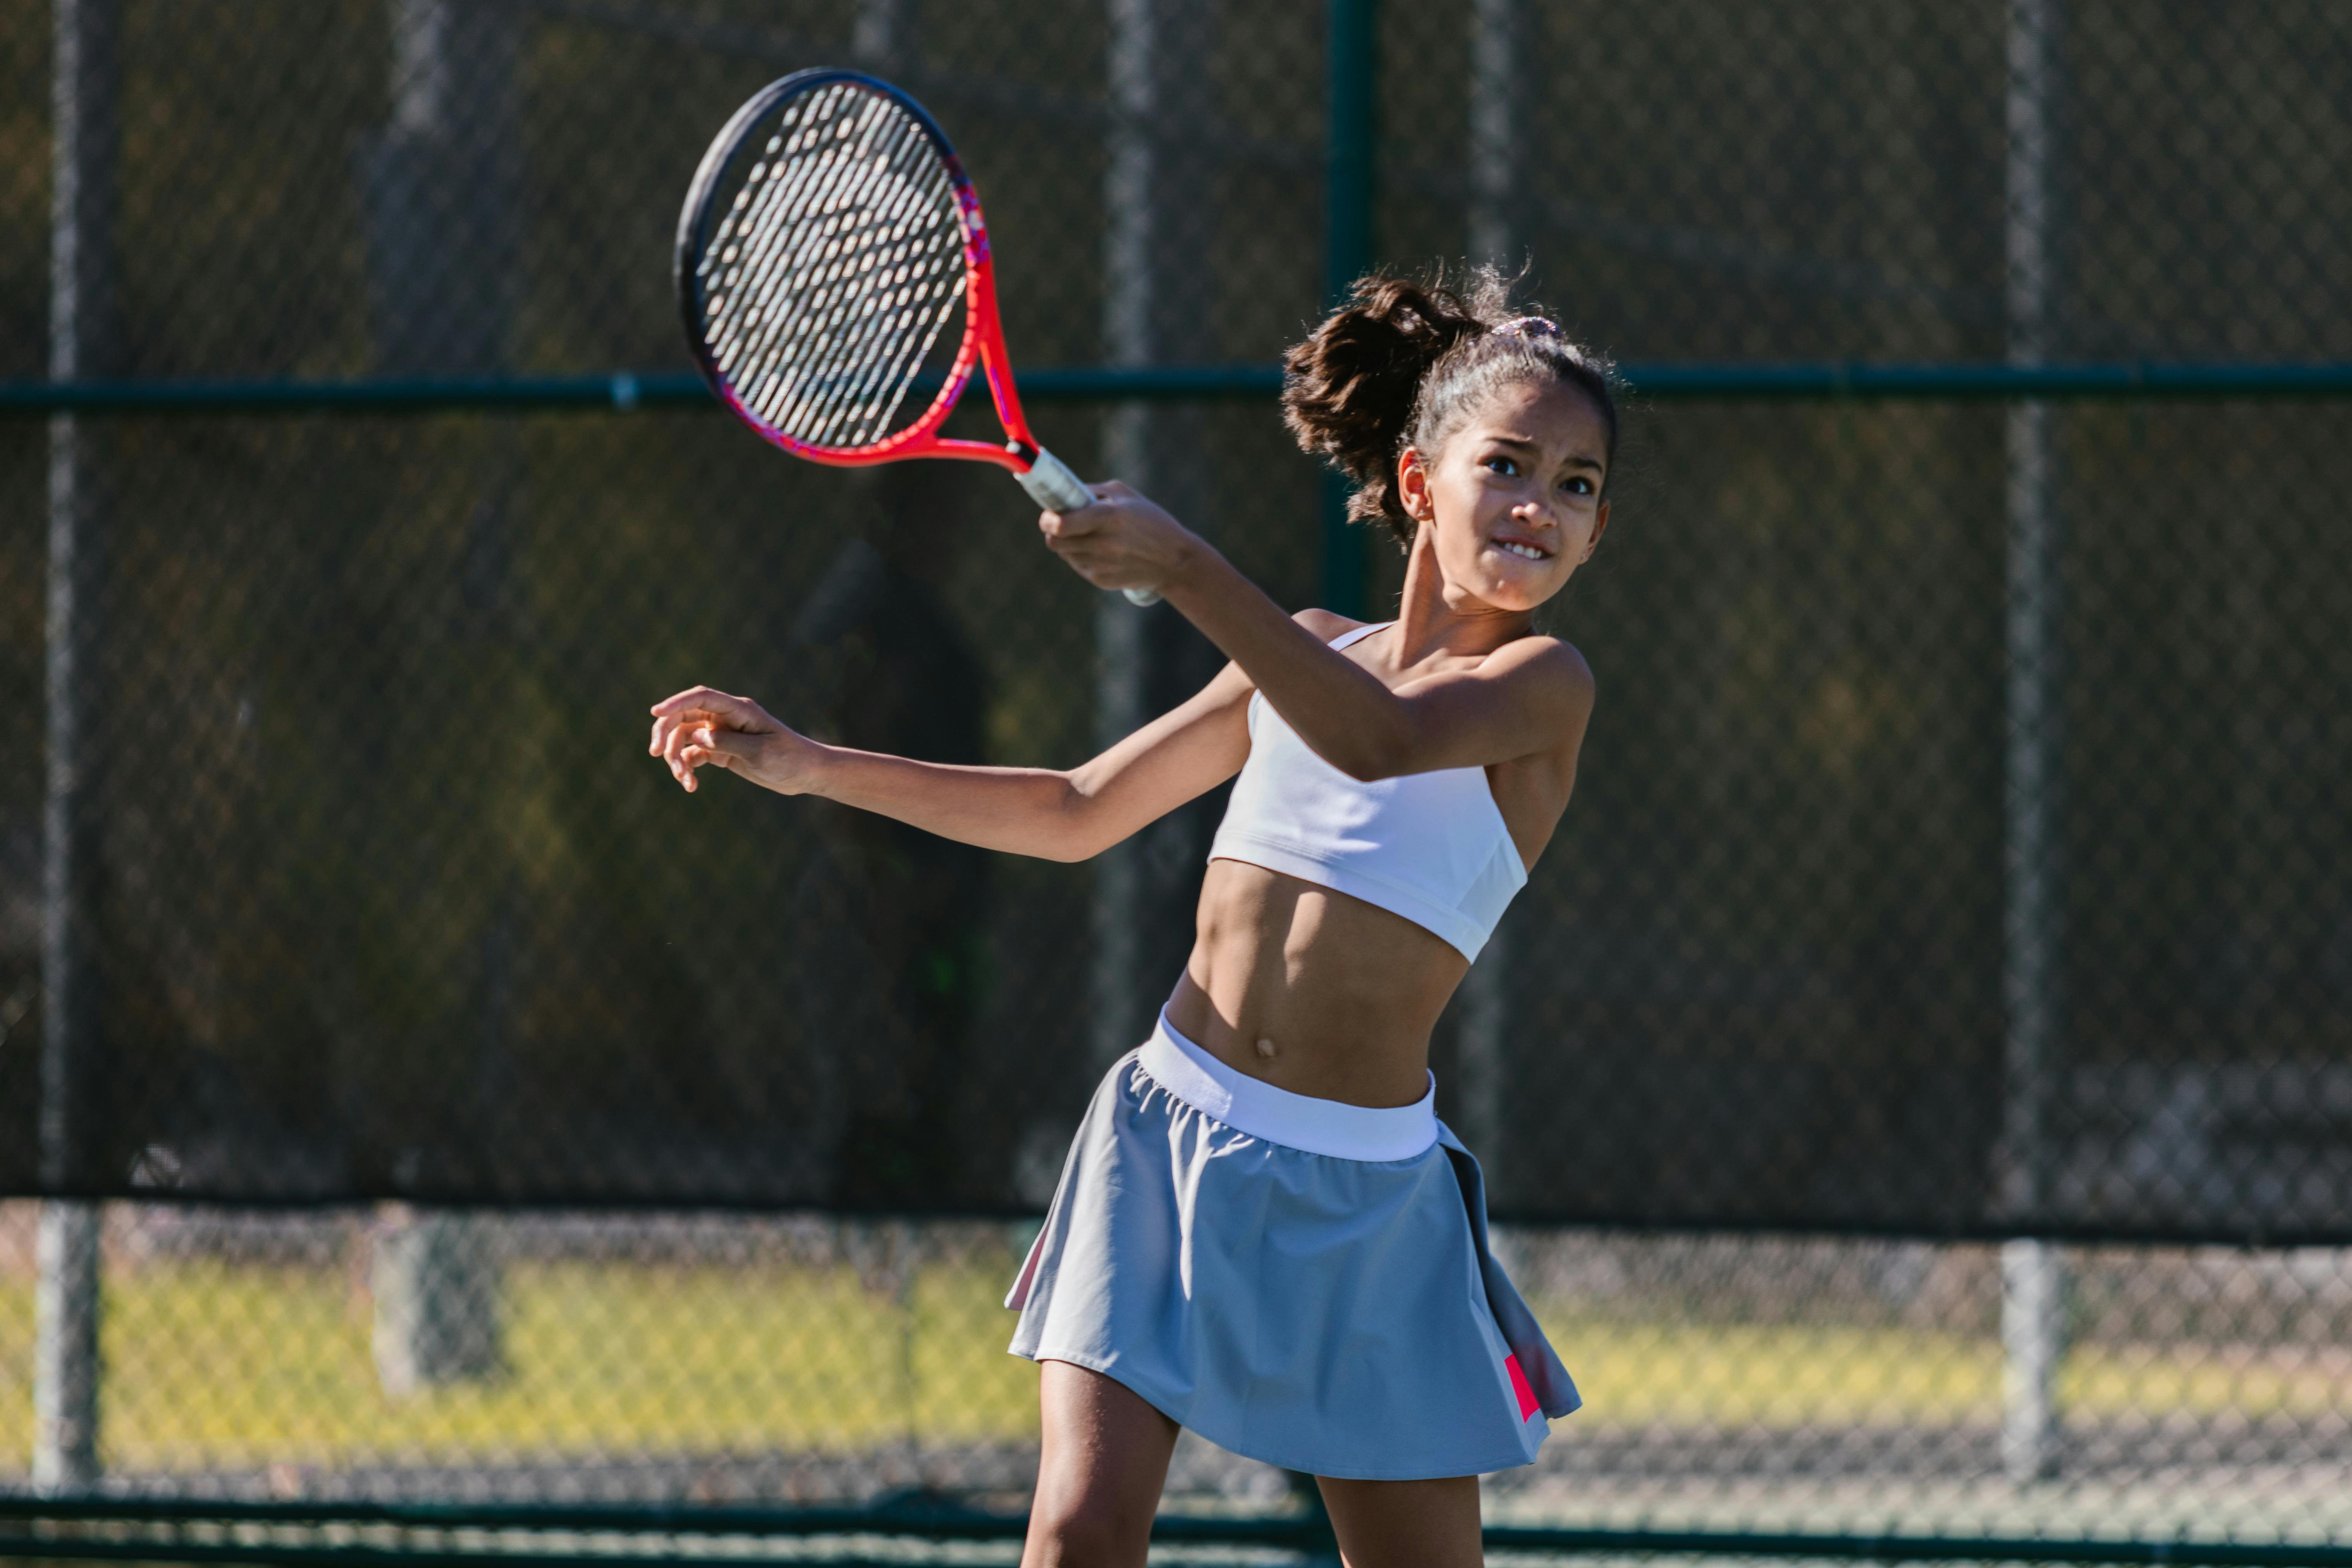 Ein Mädchen spielt Tennis | Quelle: Pexels